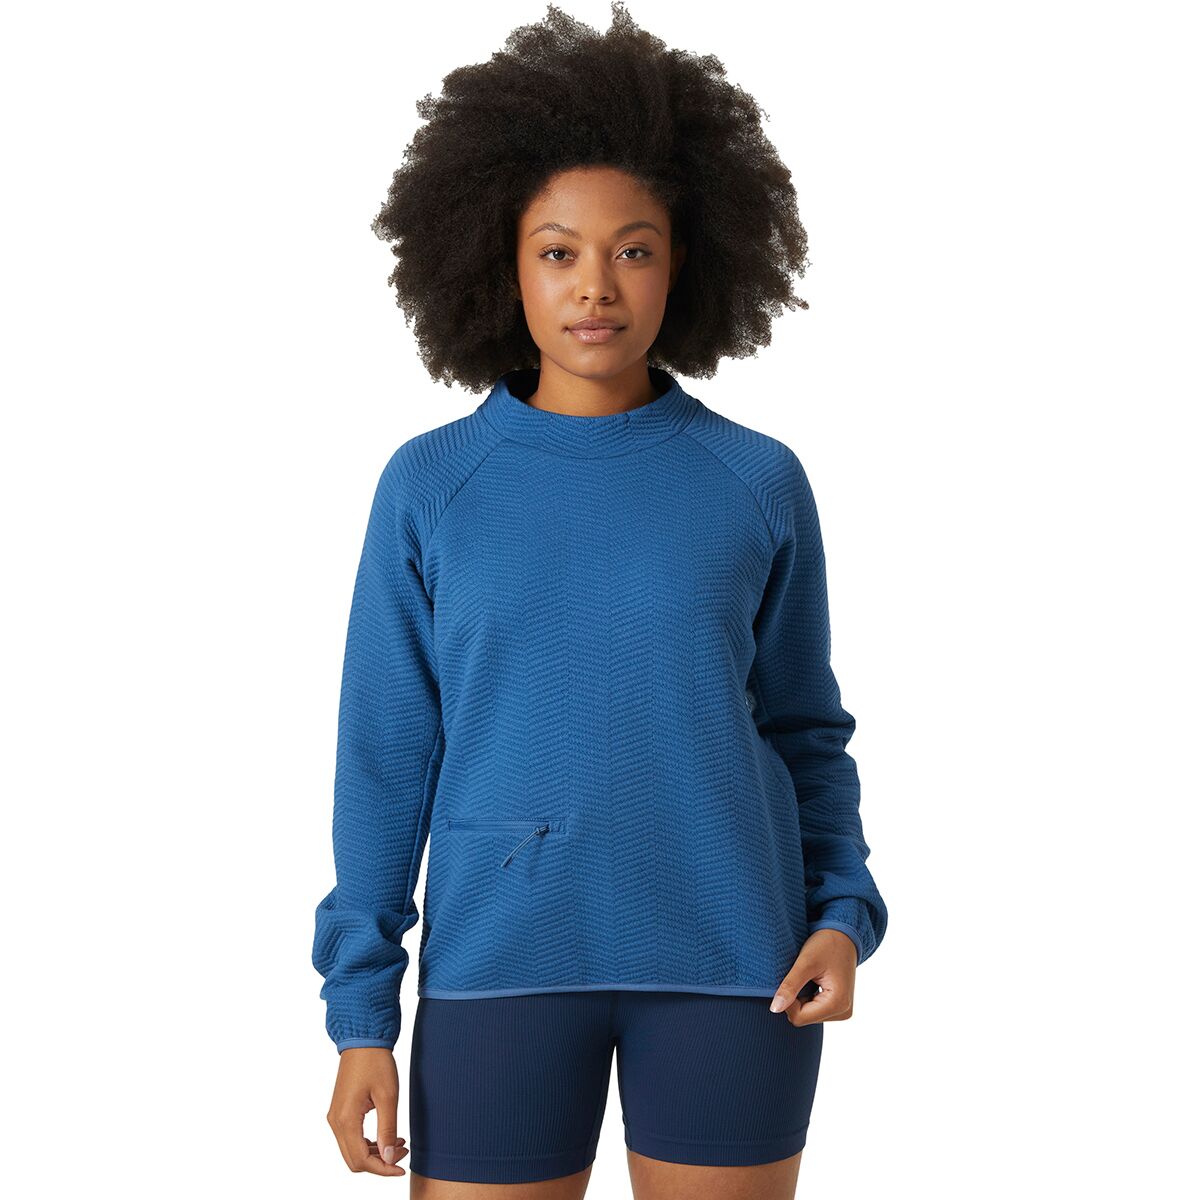 Helly Hansen Allure Pullover Sweatshirt - Women's